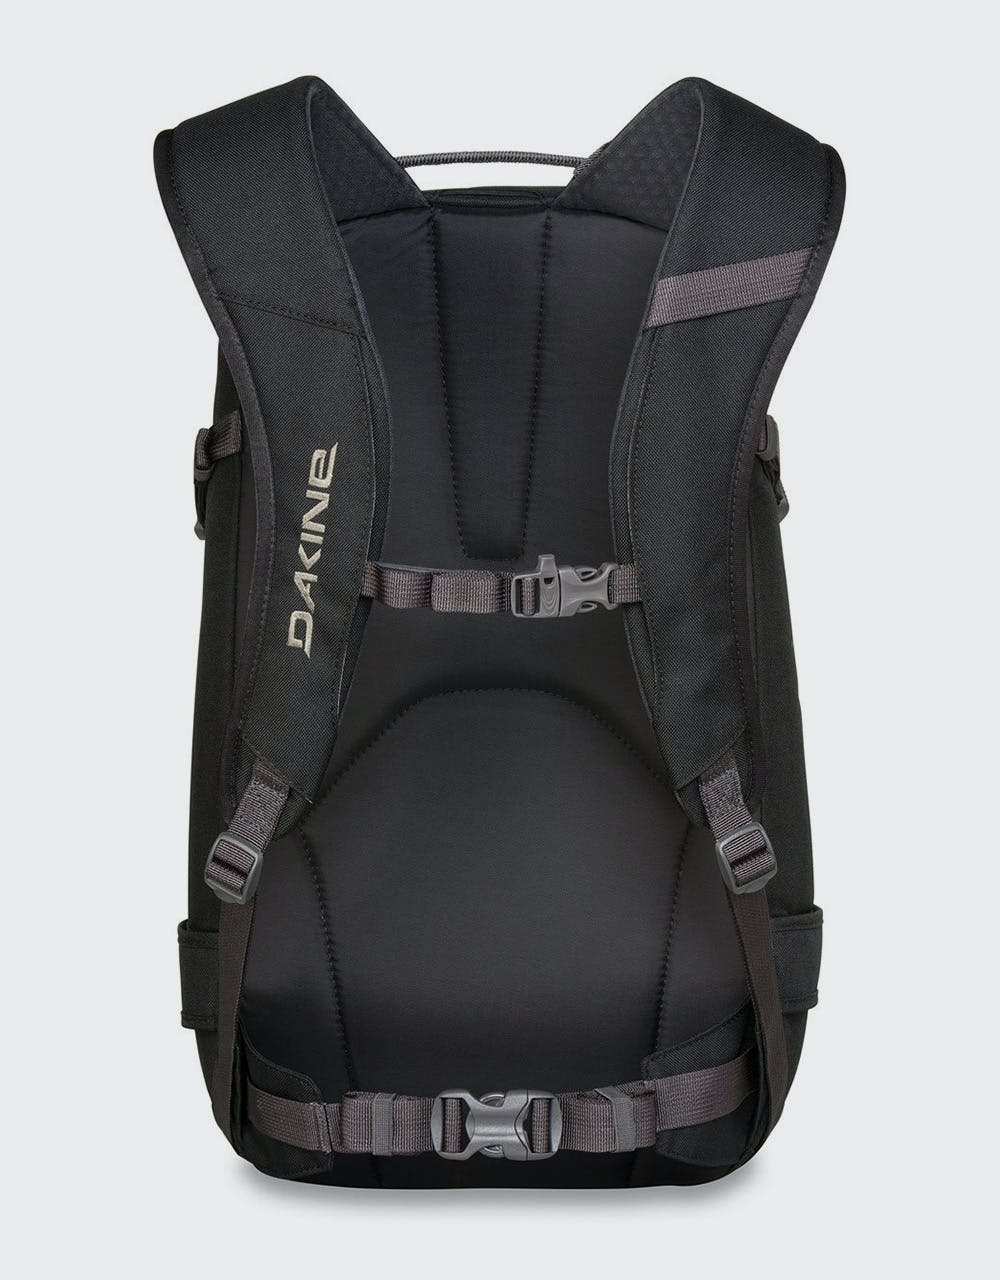 Dakine Heli Pro 20L Backpack - Squall